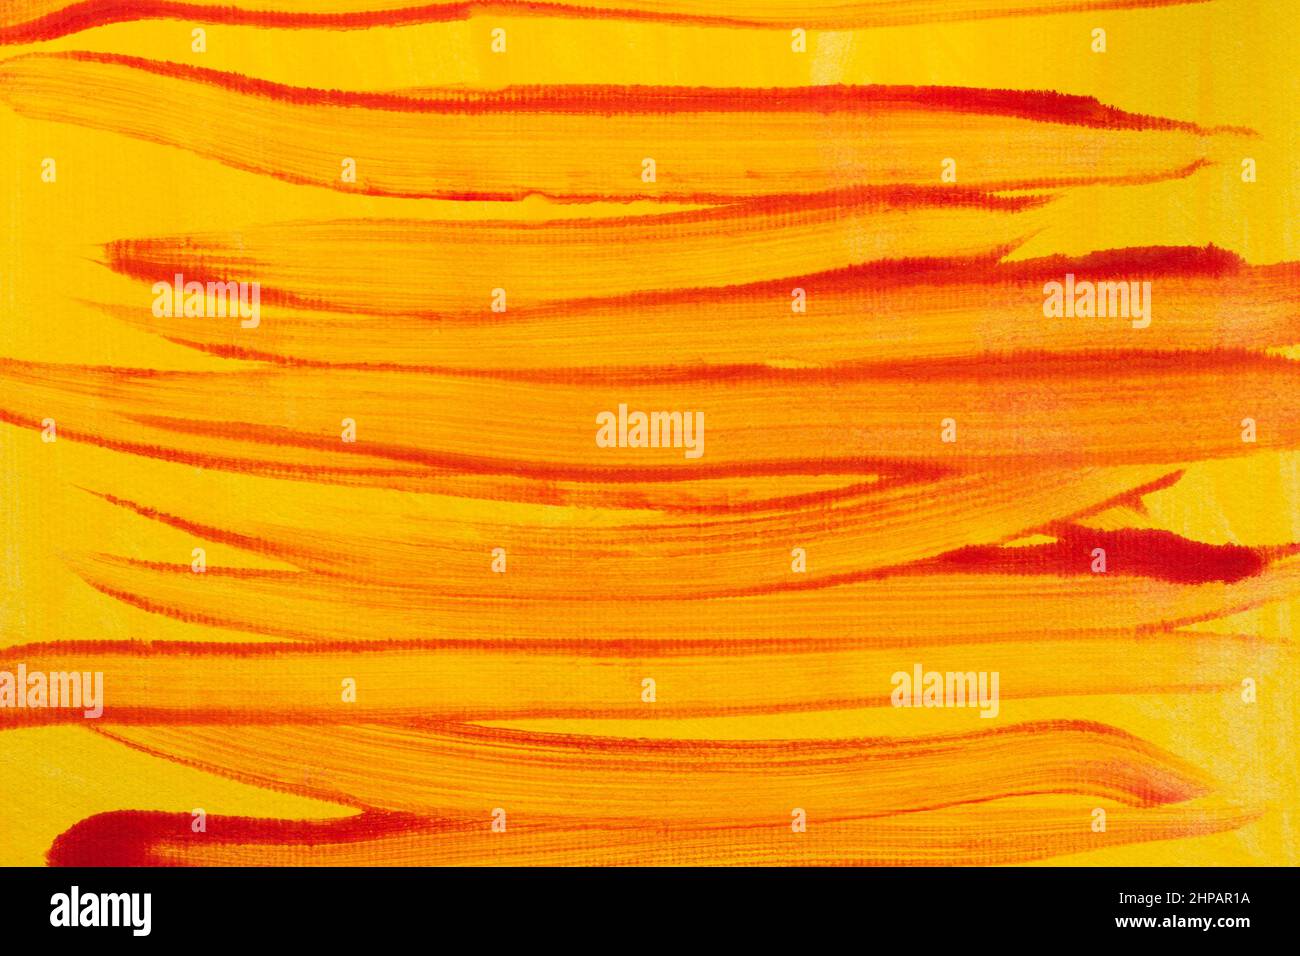 Gelbe und rote Farben gemalt bacground Textur Stockfoto